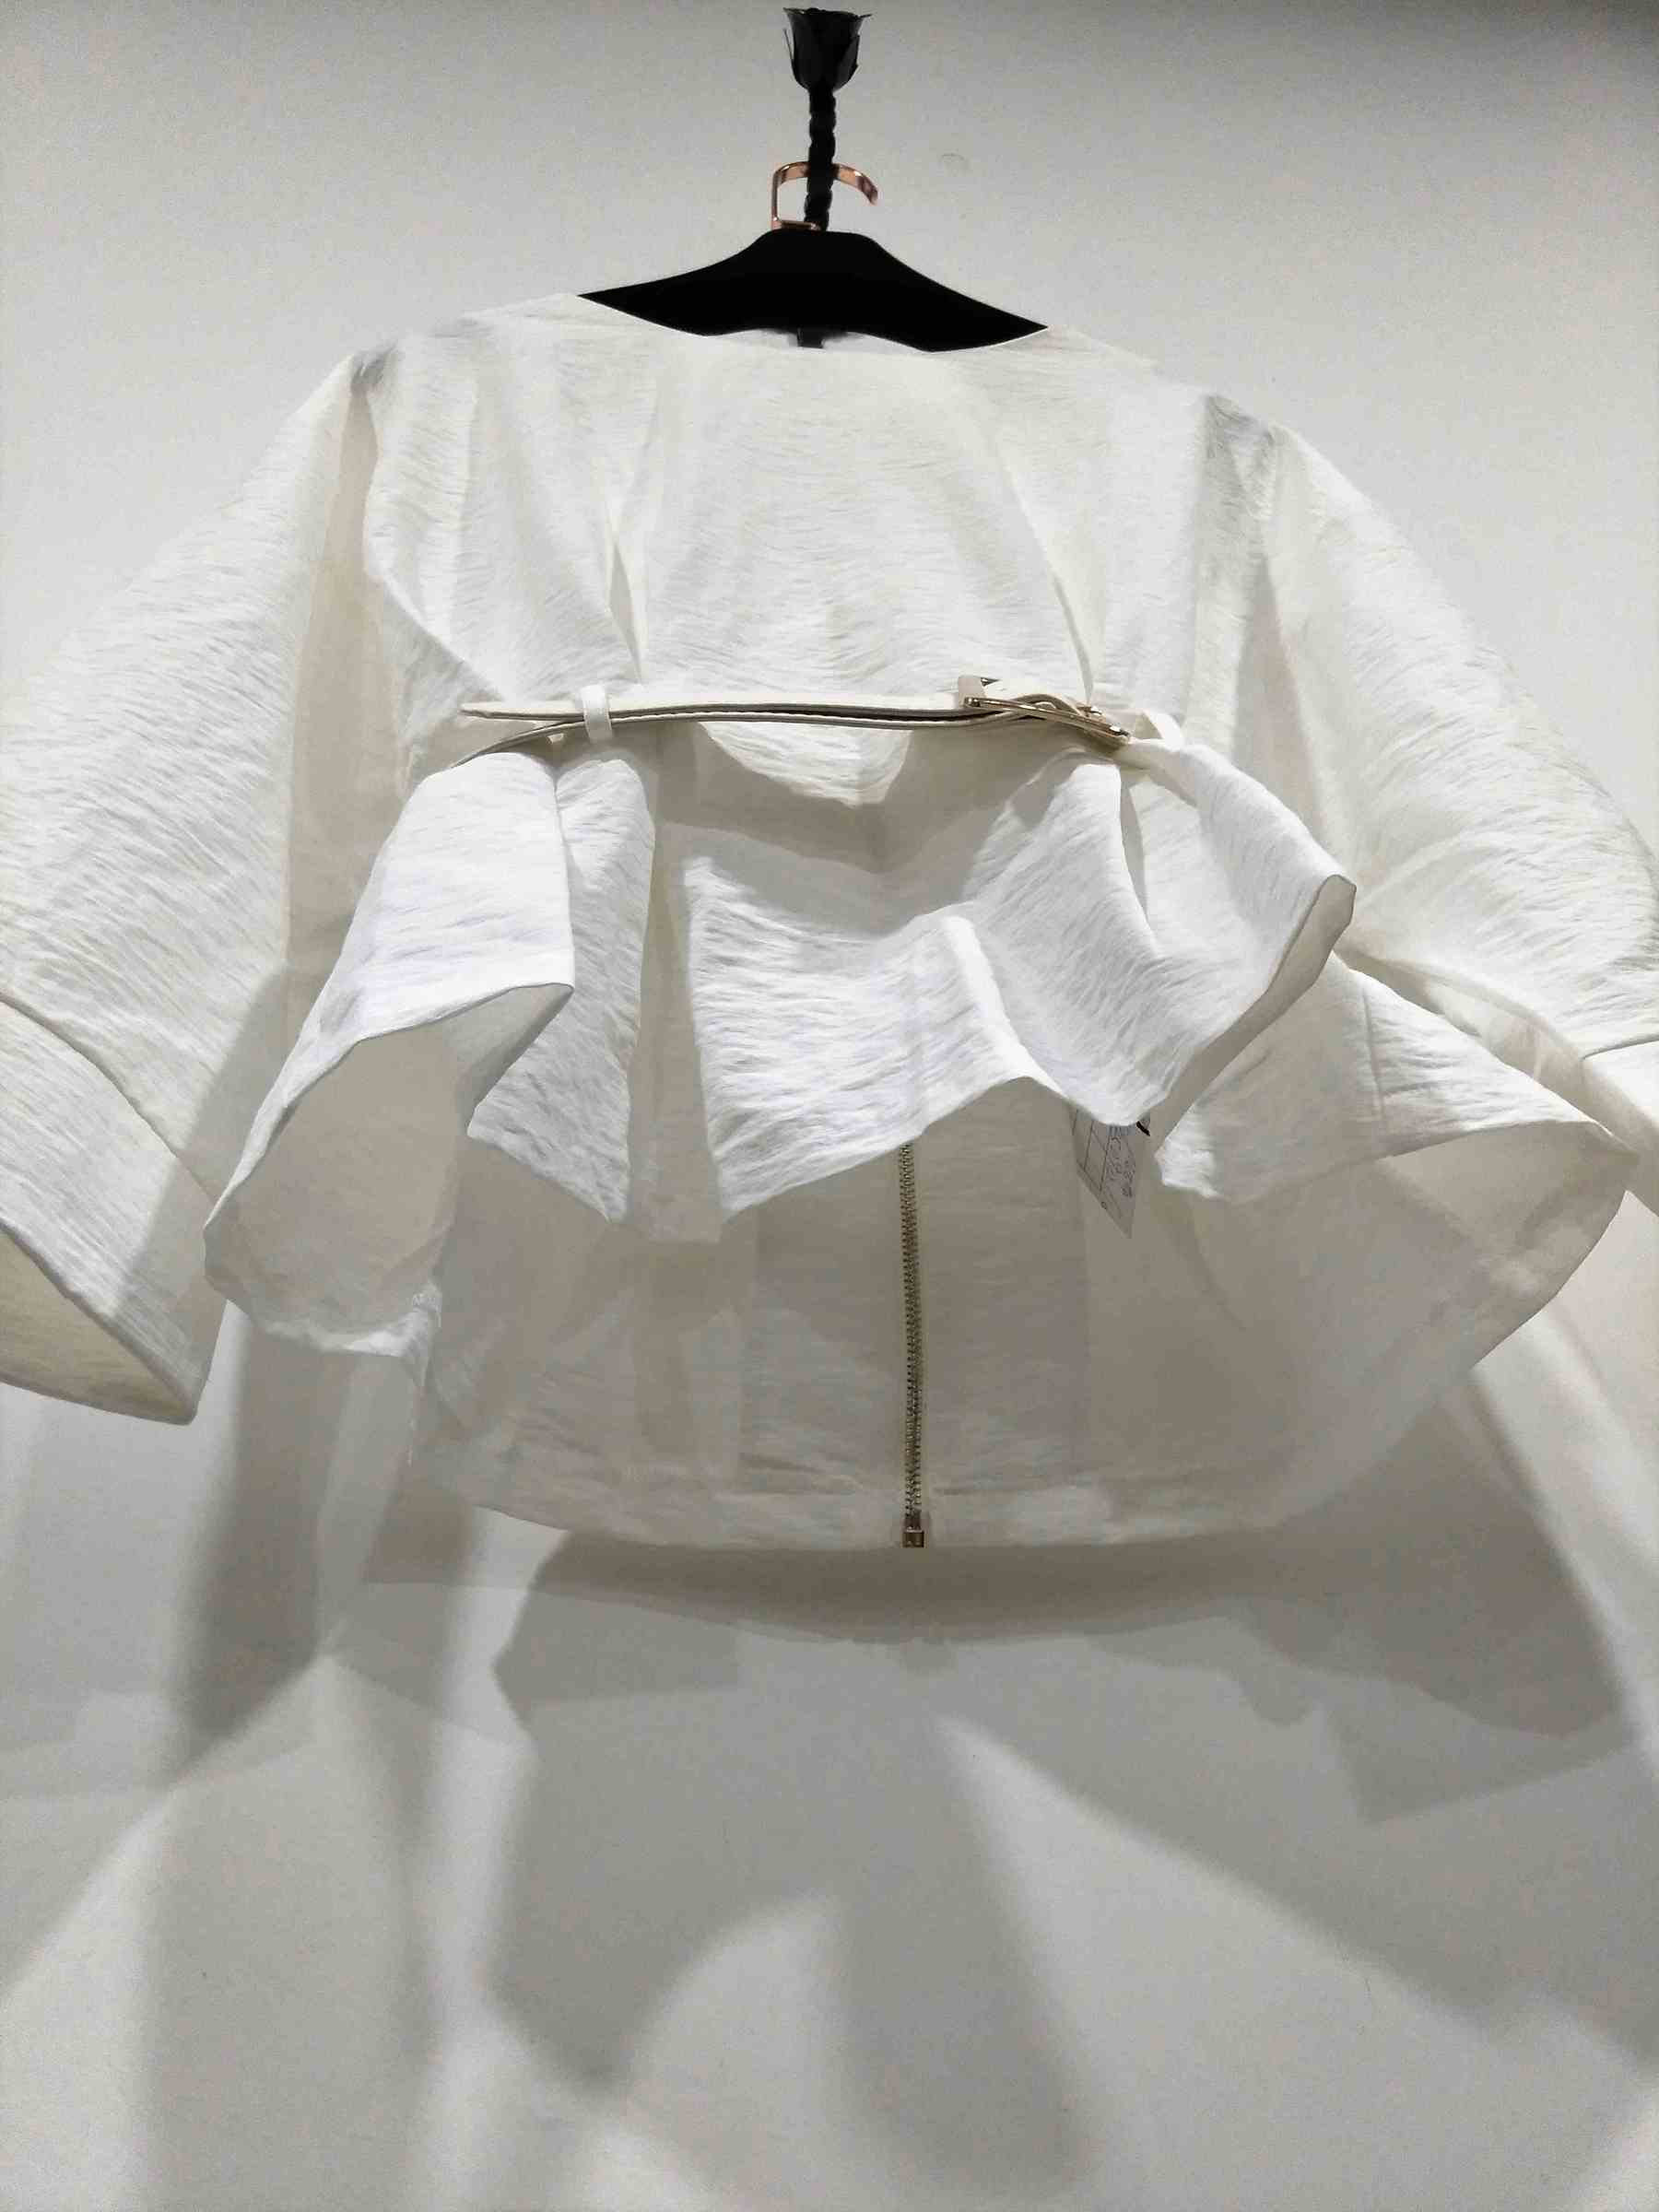 18111615-白色束腰拉鍊時尚上衣-成衣代工 (9).jpg